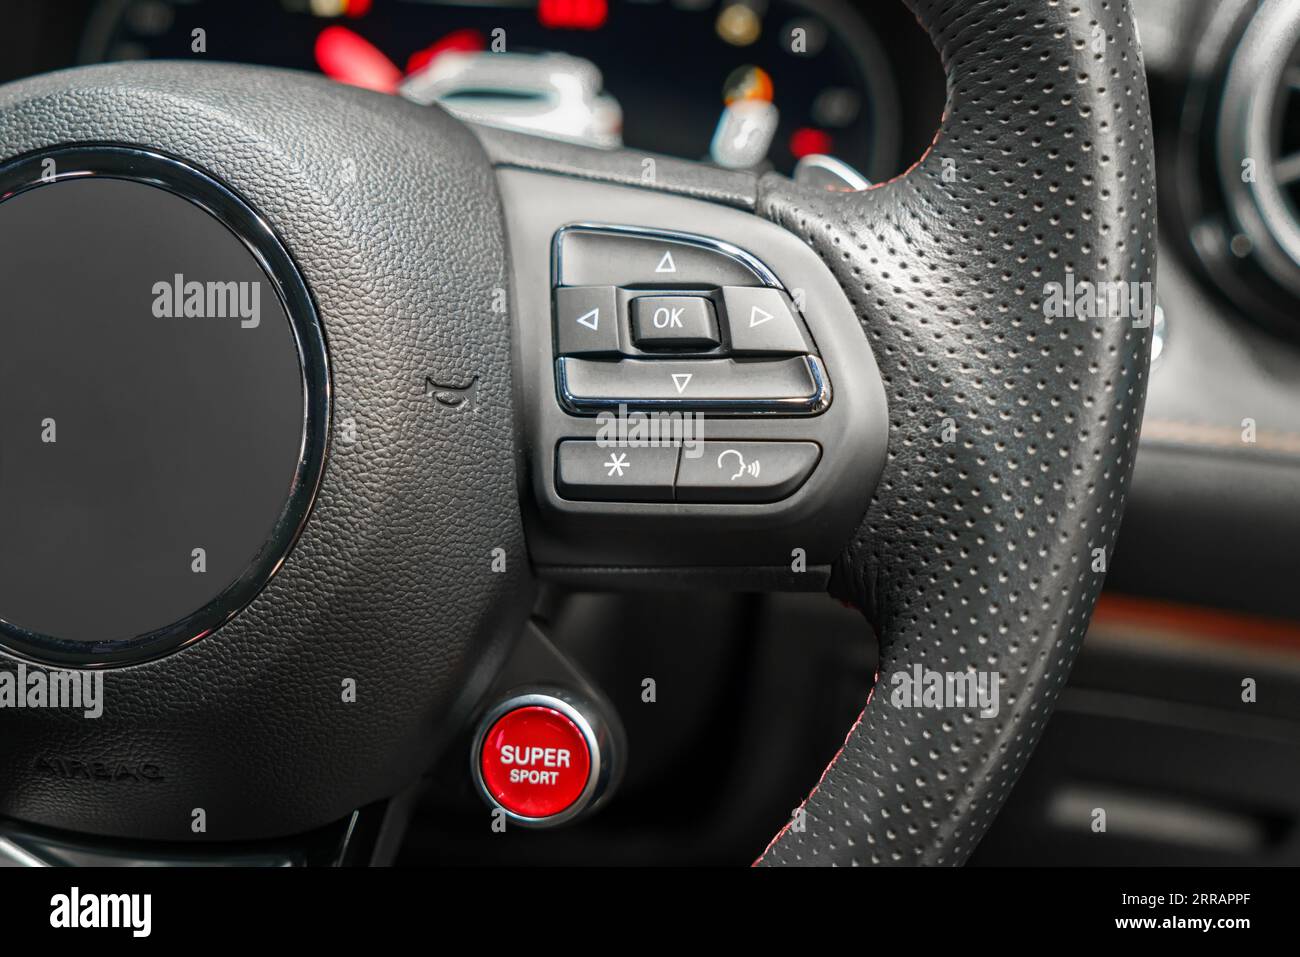 Améliorez votre expérience de conduite avec notre volant doté de boutons multifonctions pour un accès facile aux fonctions audio, téléphonique et régulateur de vitesse Banque D'Images